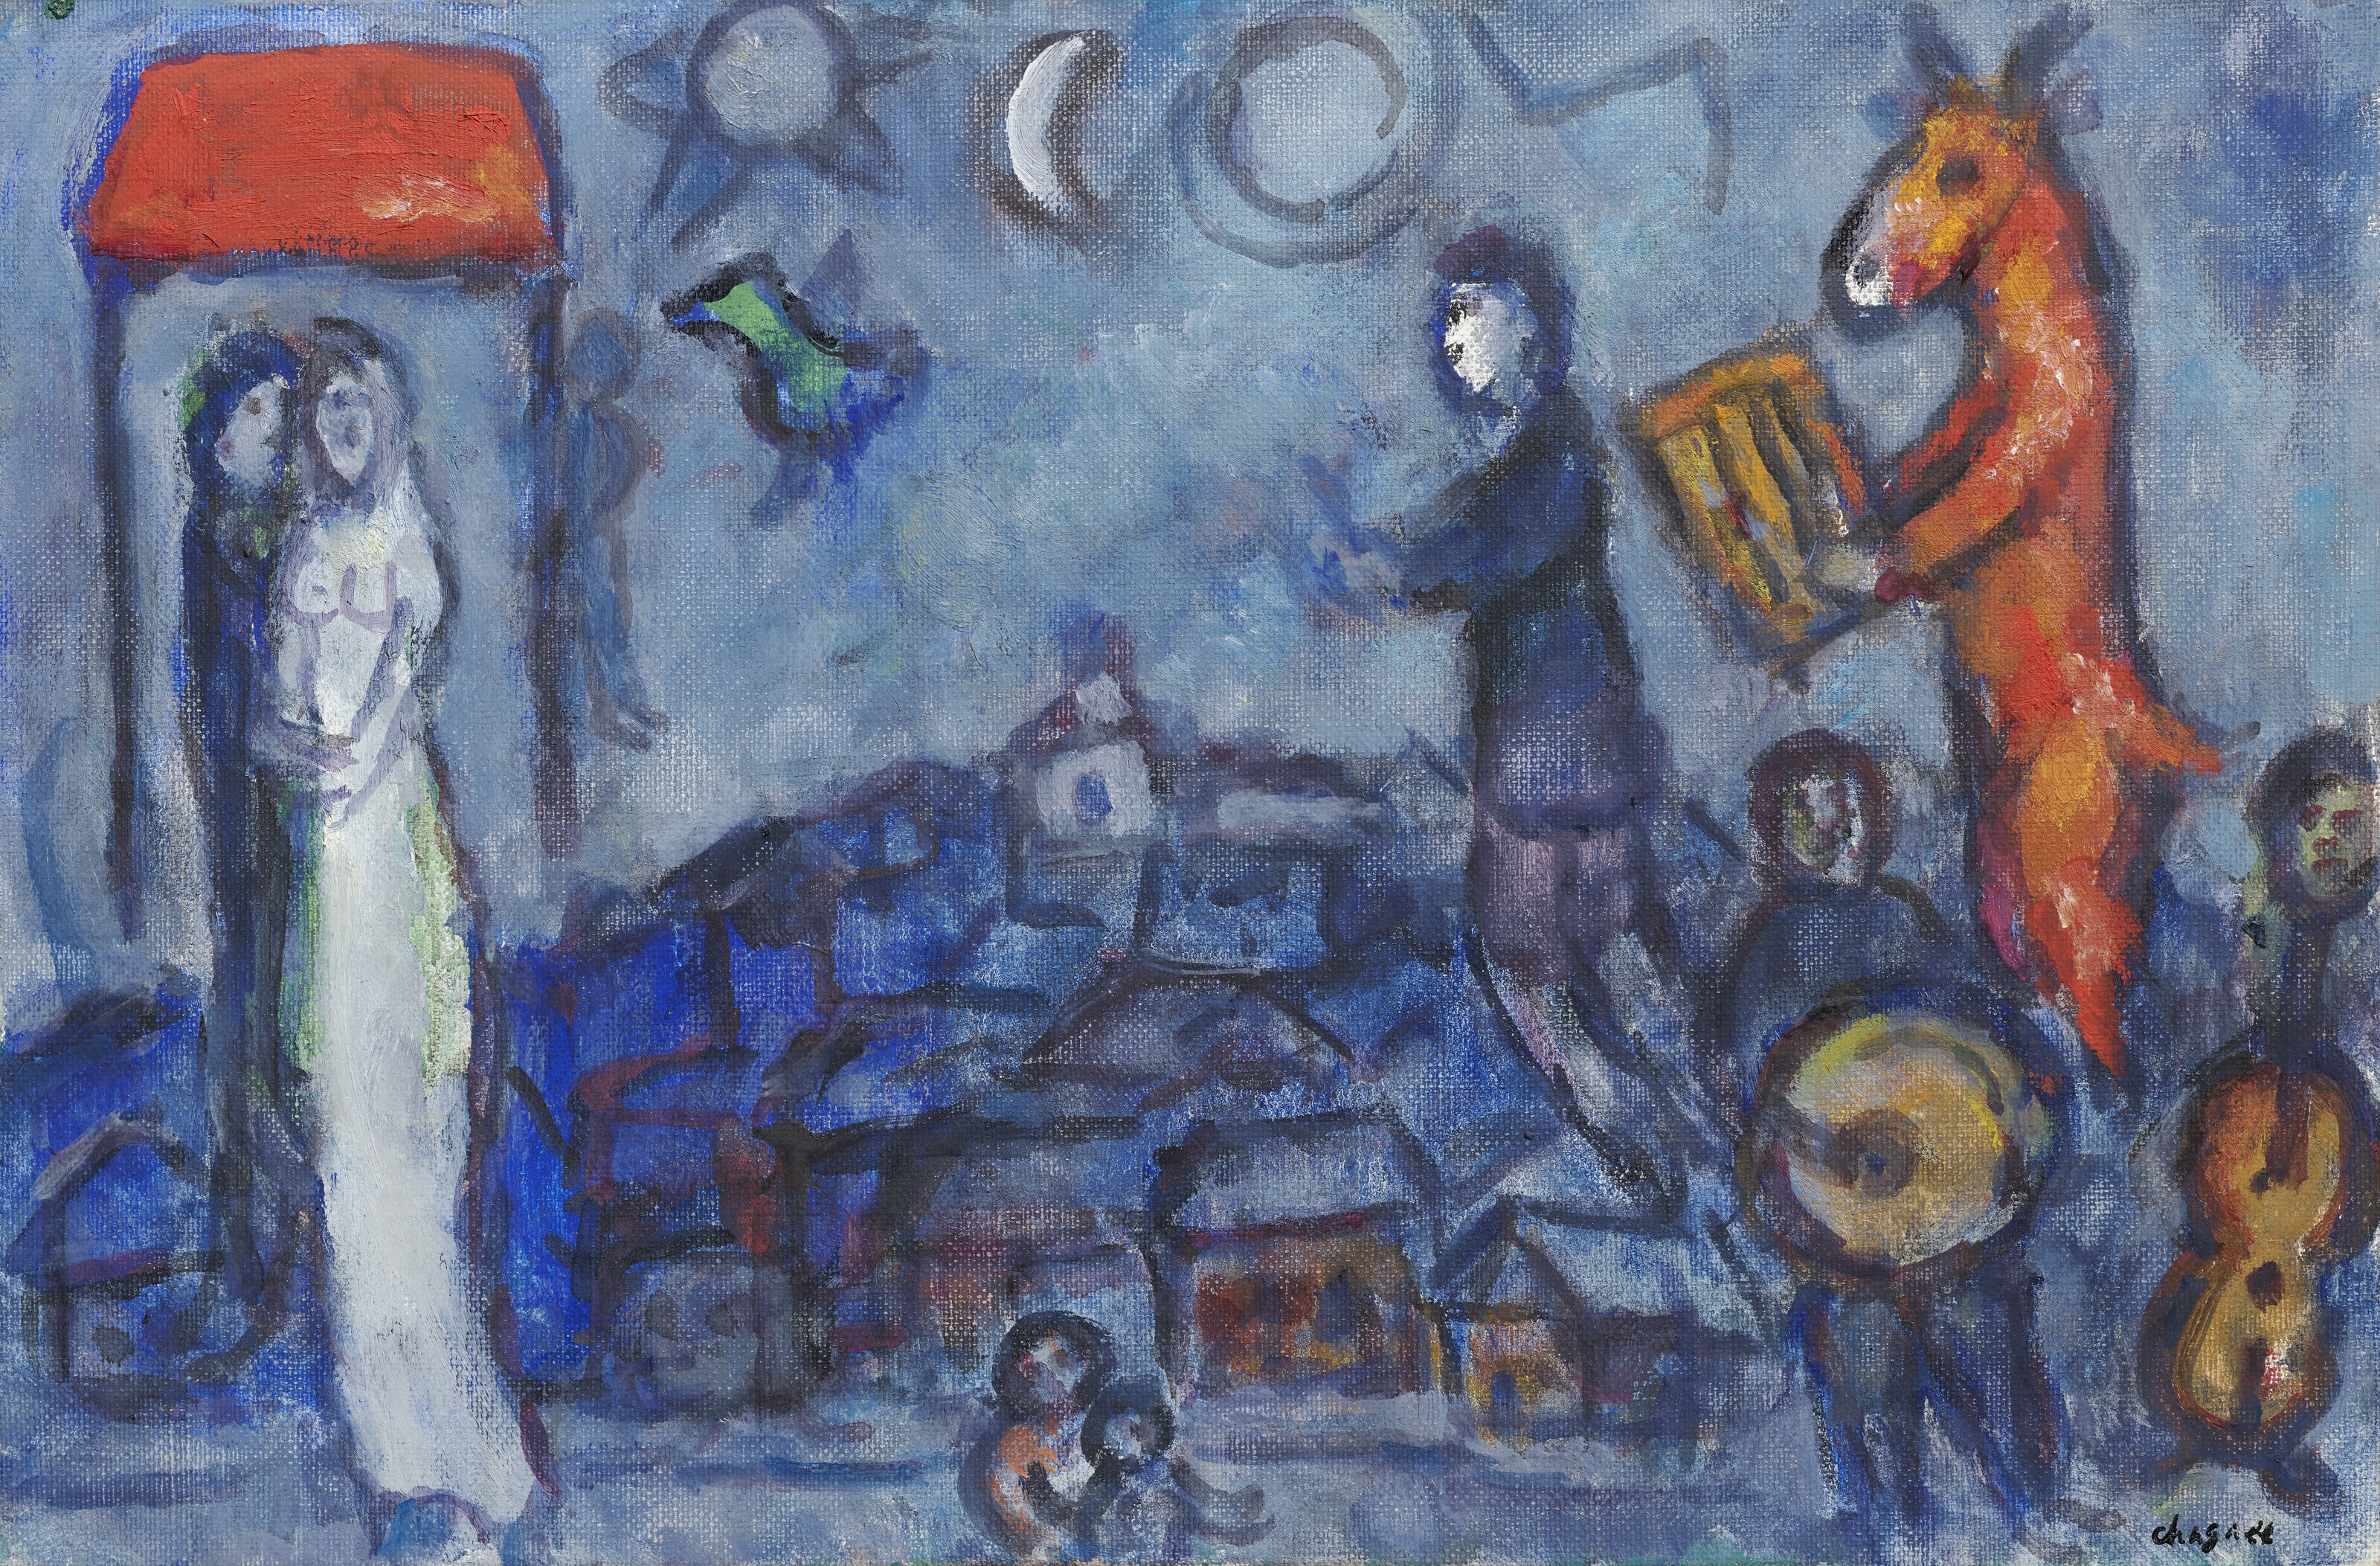 L'âne musicien et les mariés by Marc Chagall, Painted in 1978